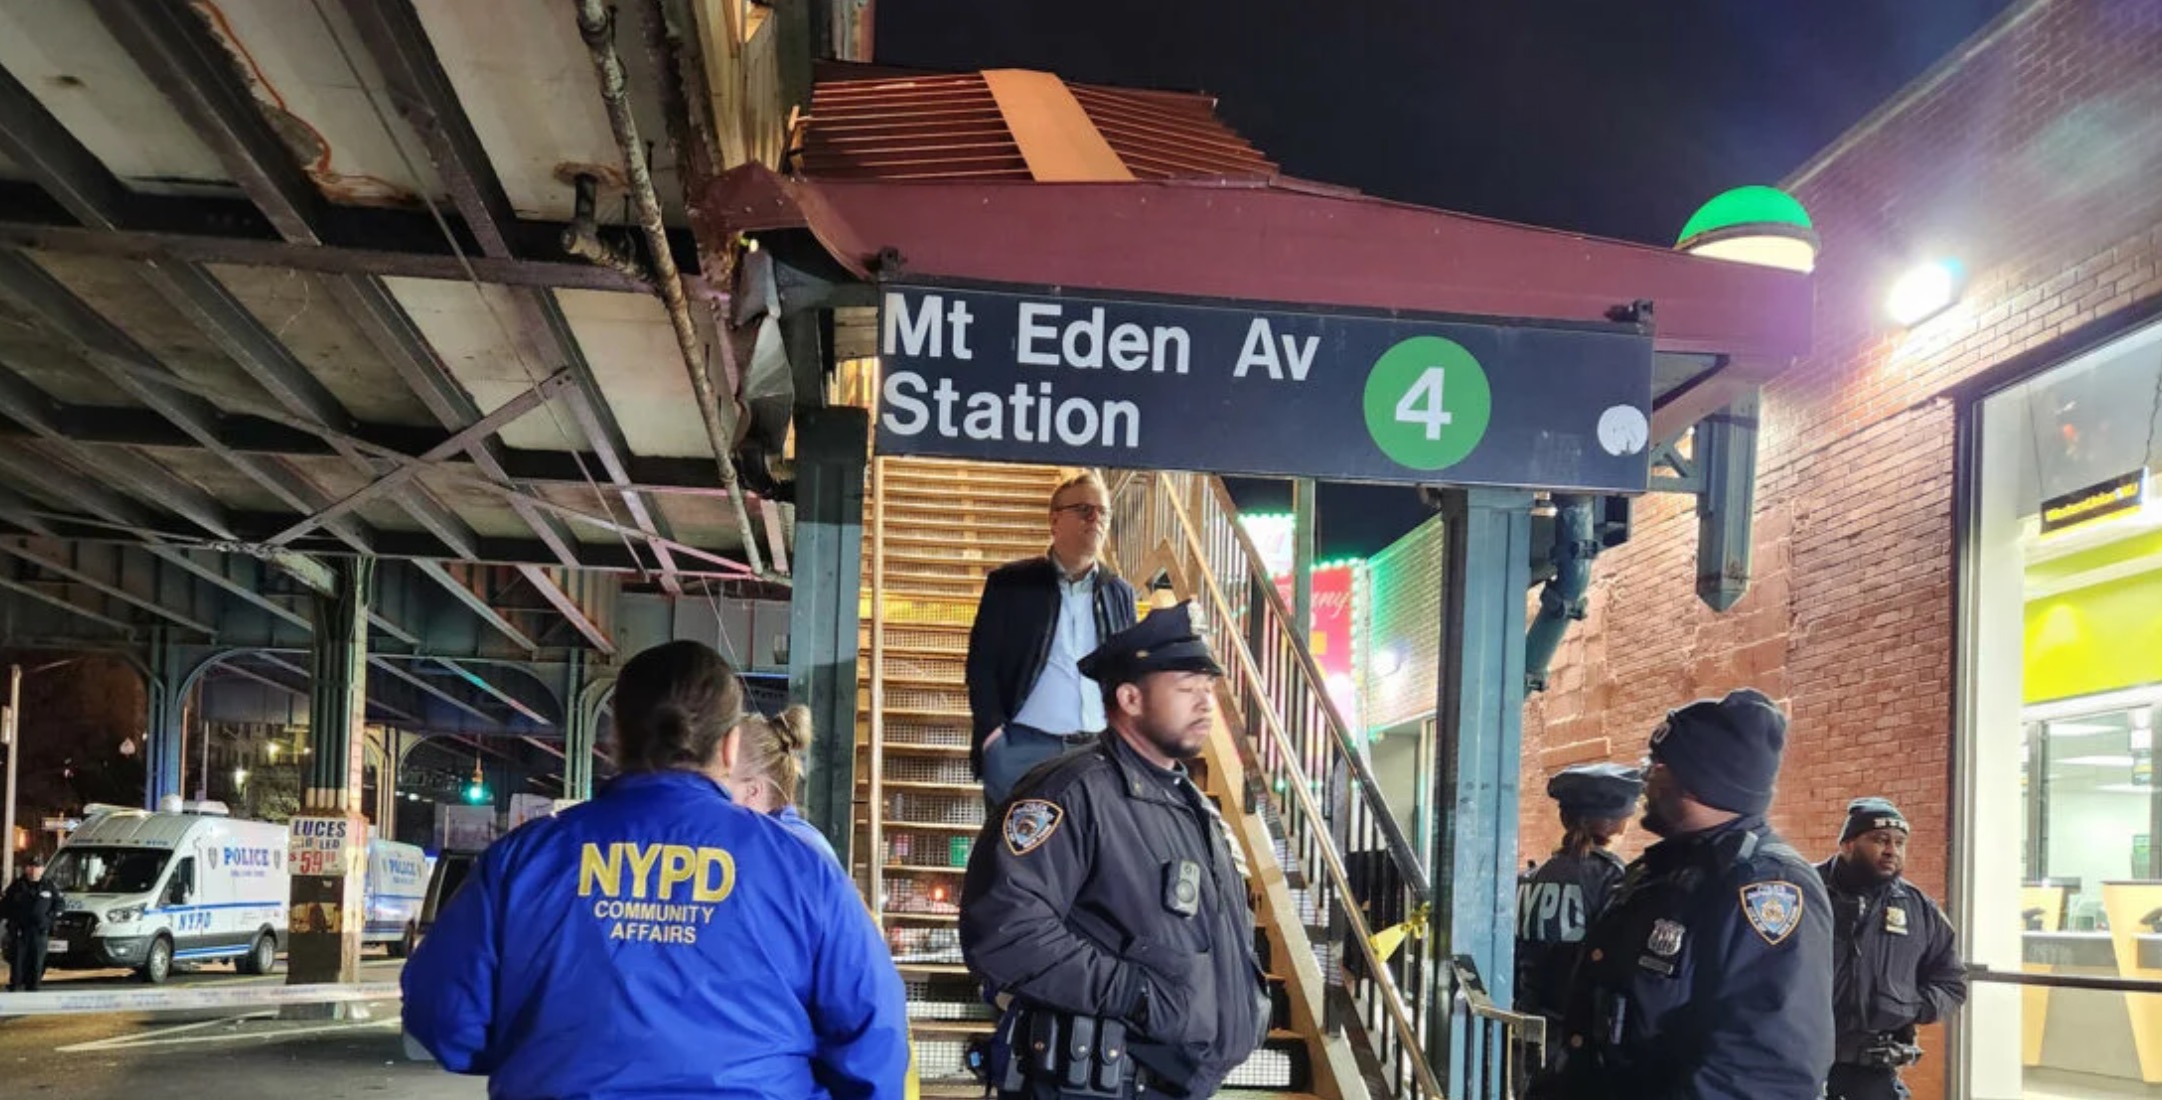 Σοκάρει η ένοπλη επίθεση στο μετρό της Νέας Υόρκης: Ένας νεκρός και 5 τραυματίες!